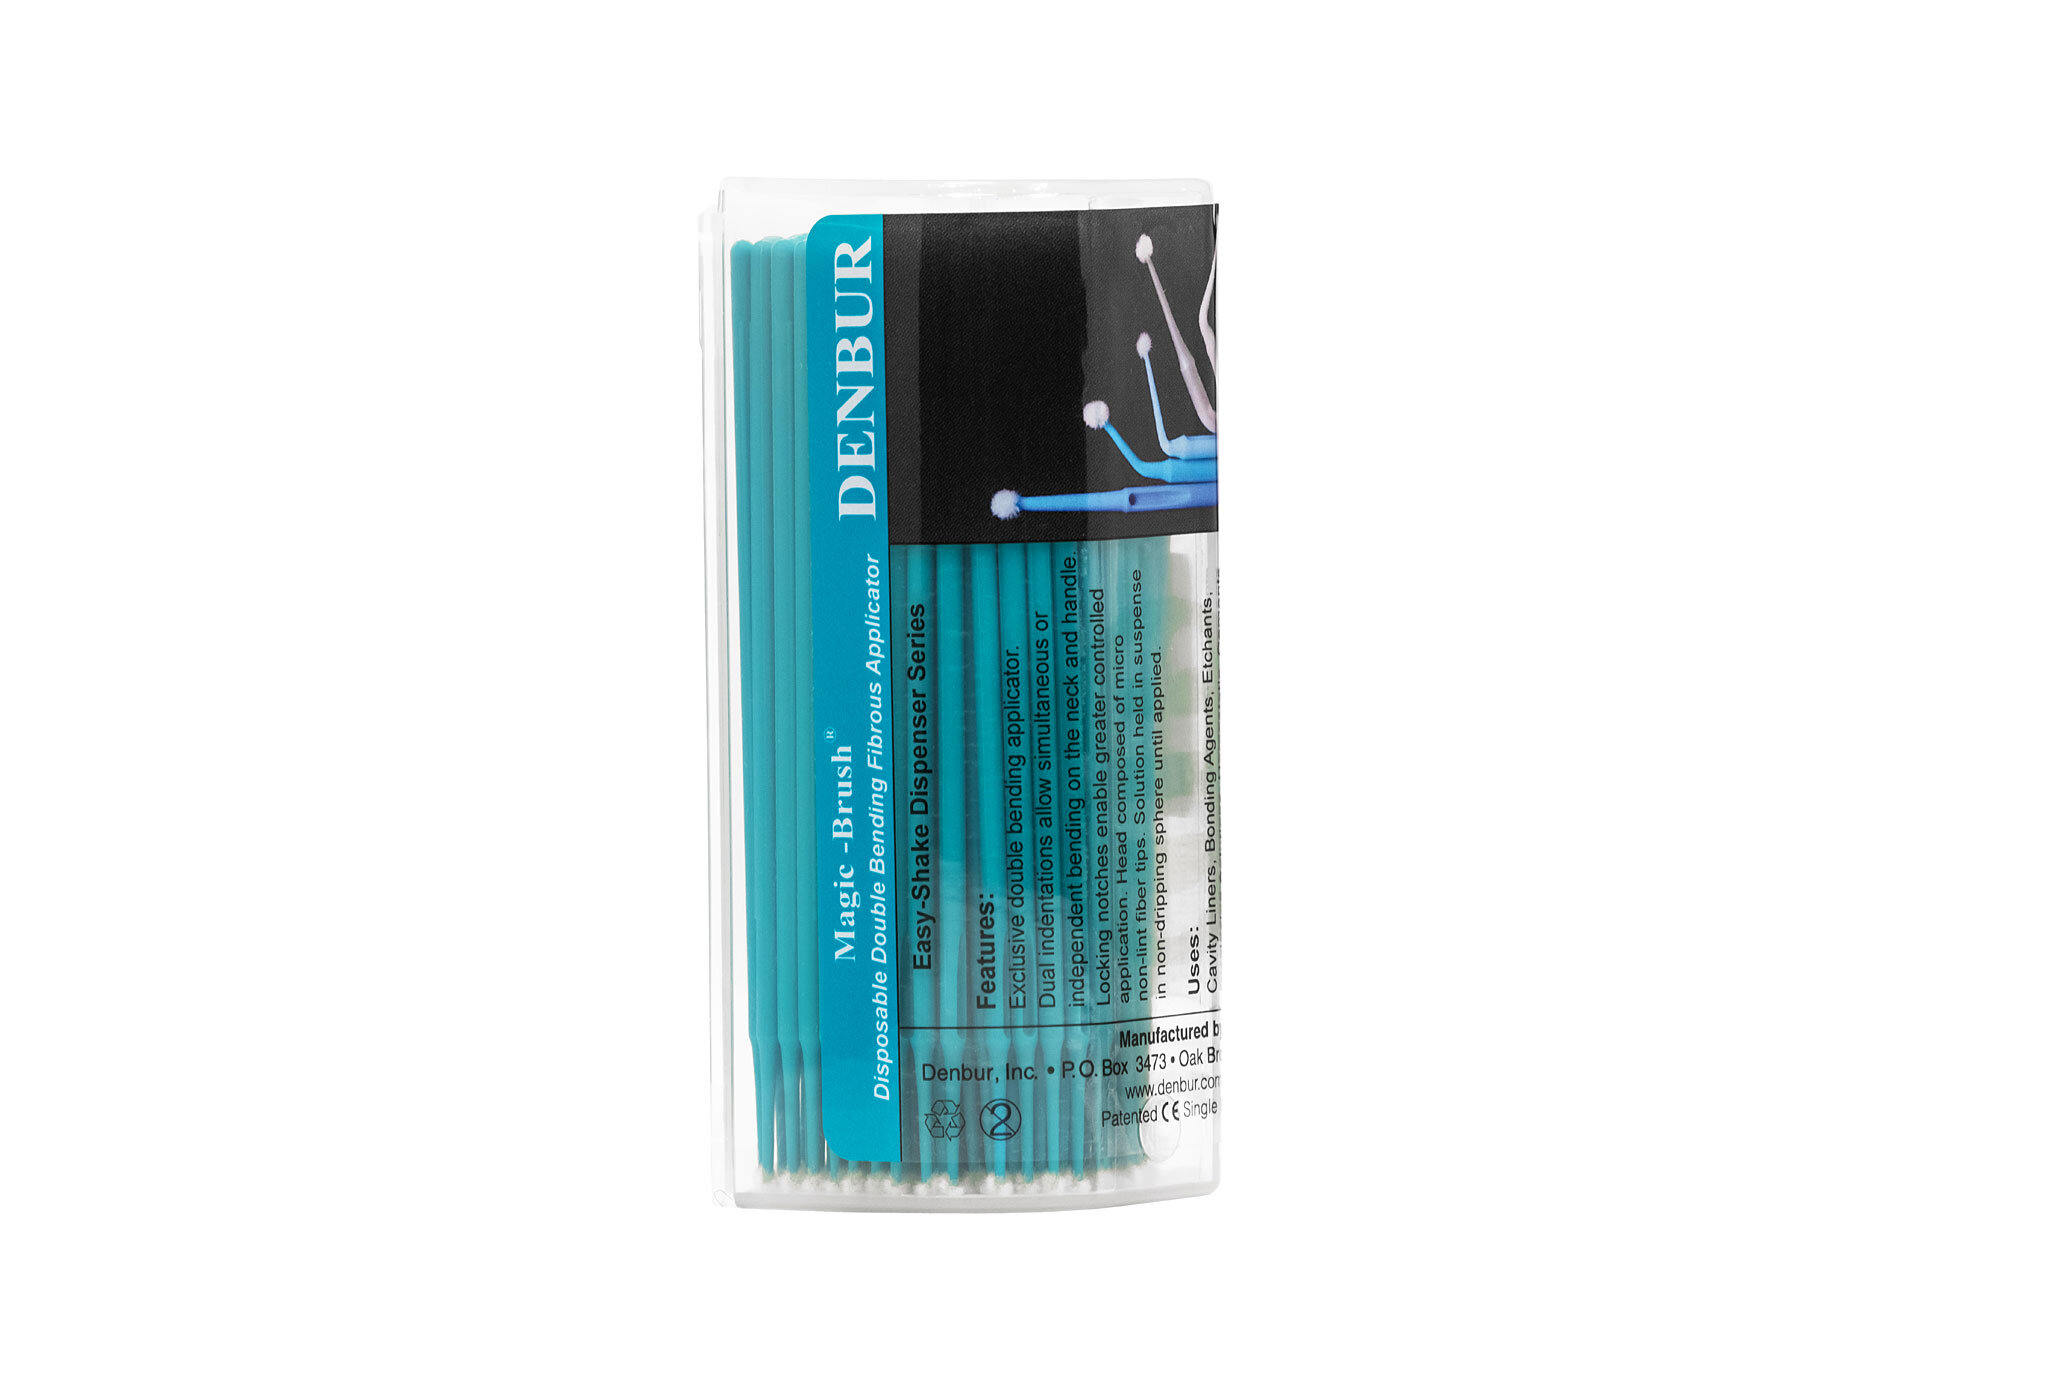 Magic Brush Applicators - Micro Dental Brushes